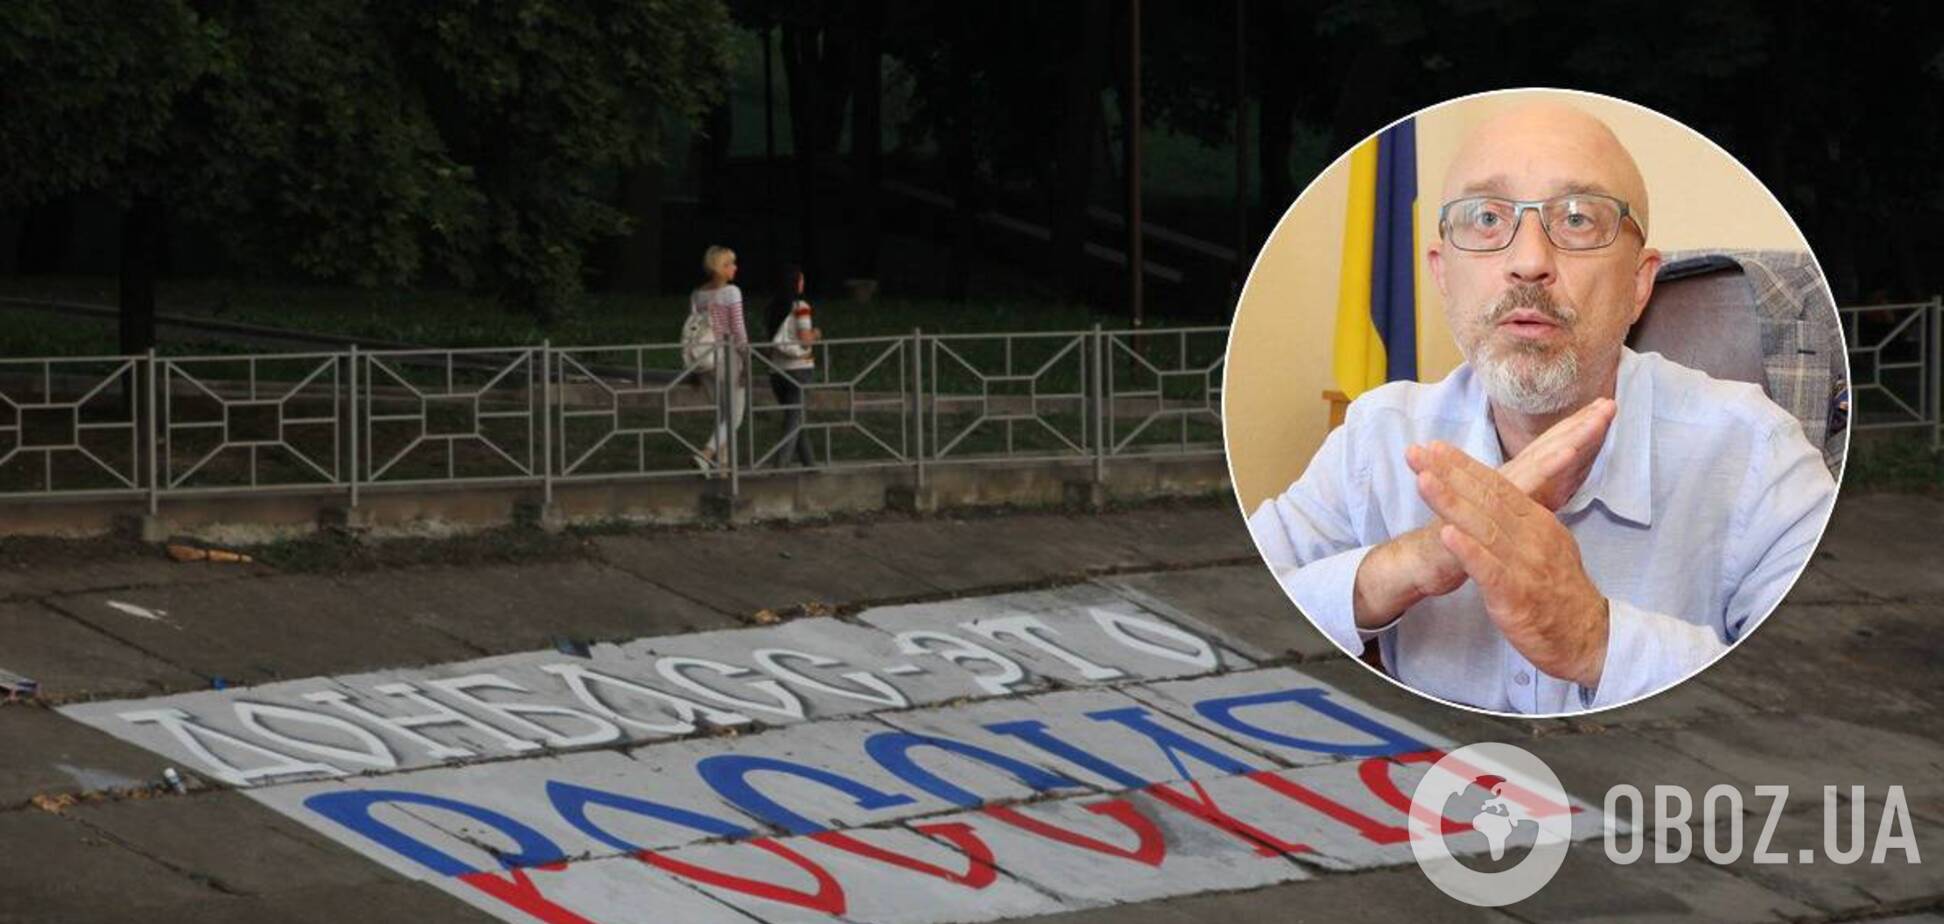 Олексій Резніков розповів, що на Донбасі хлопці у 20 років ненавидять Україну